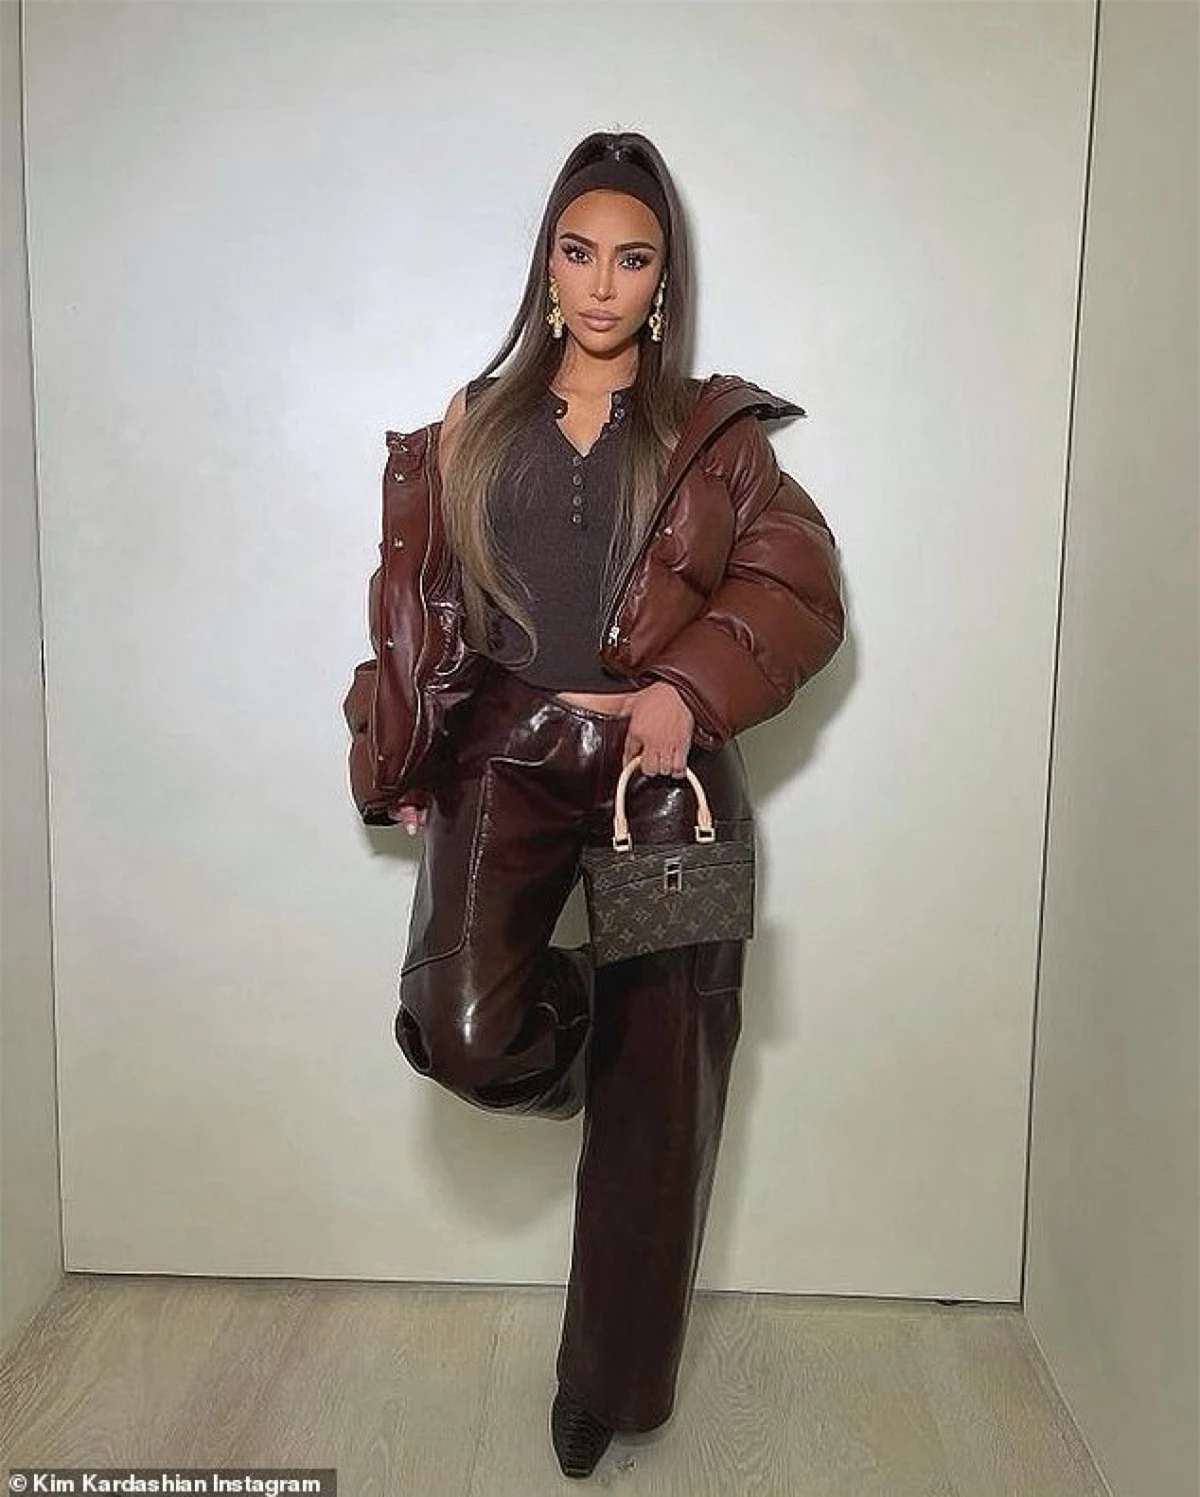 Kim Kardashian vừa khoe loạt ảnh phong cách lên trang Instagram cá nhân.